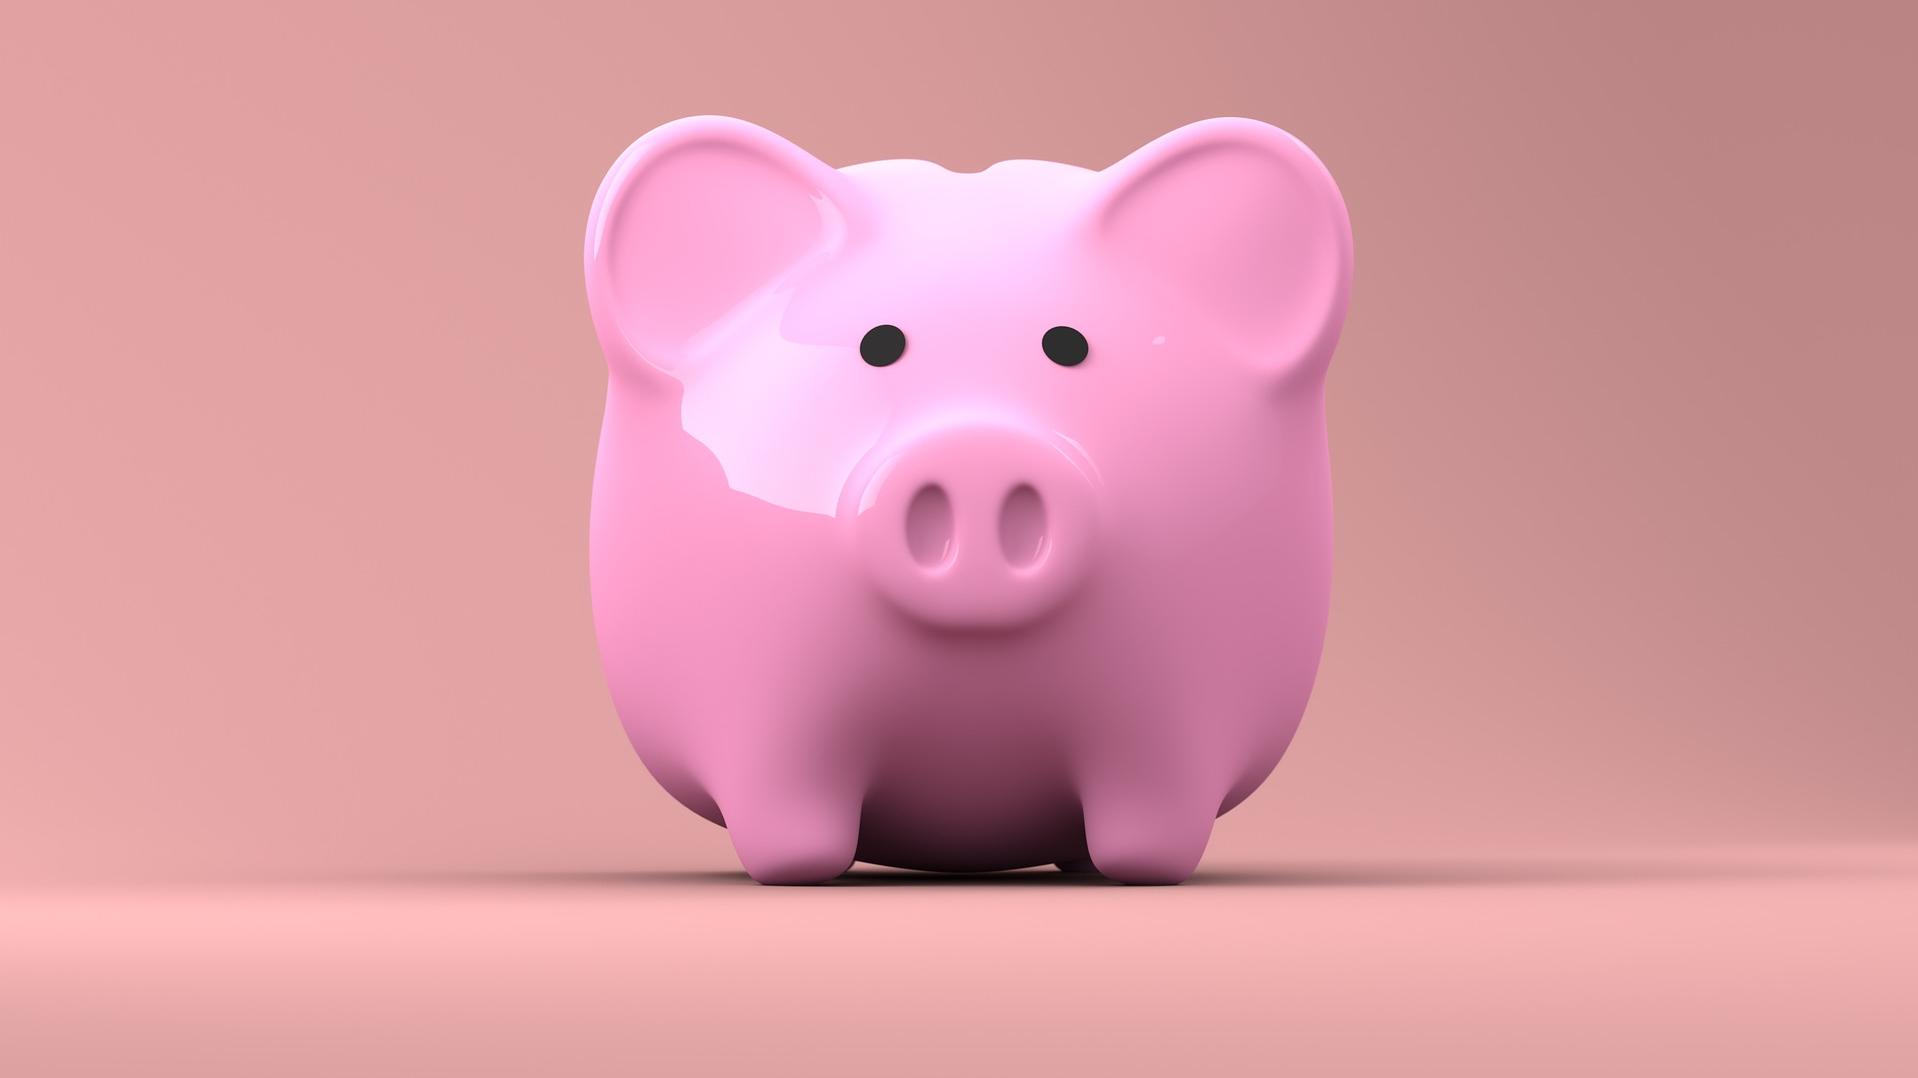 Stimmungsbild zum Beitrag: Es wird ein rosa Sparschwein abgebildet.